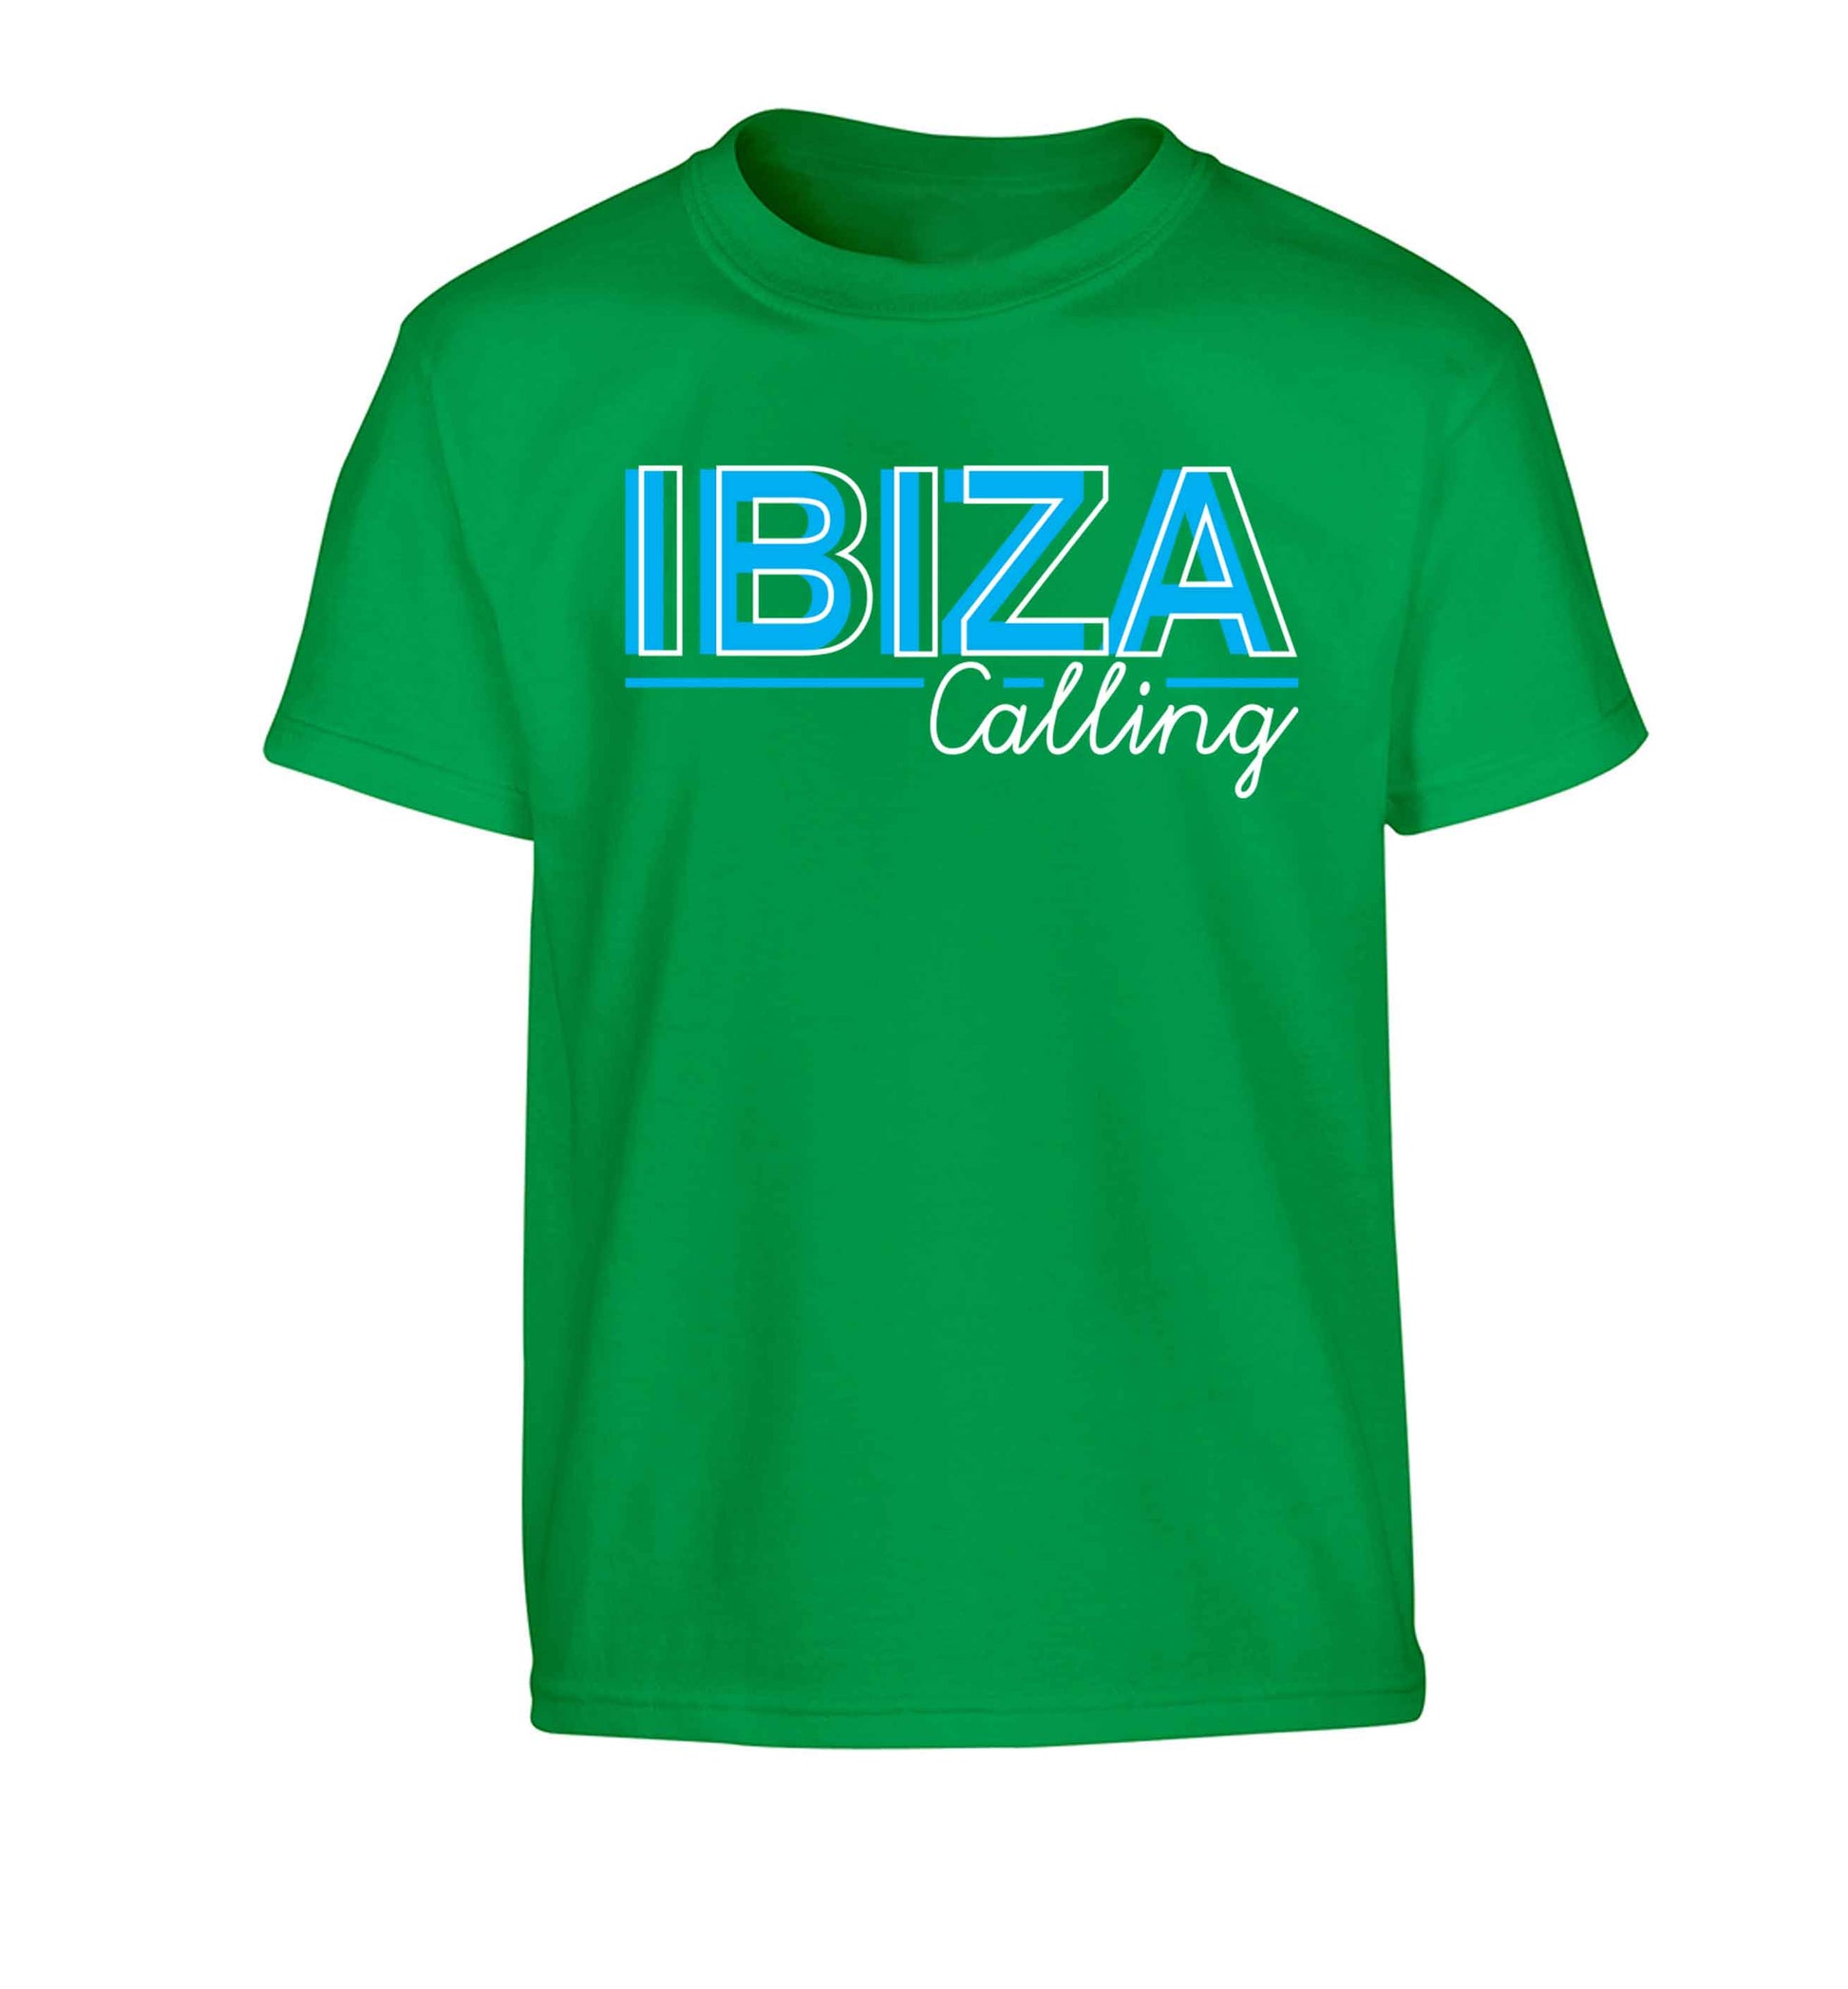 Ibiza calling Children's green Tshirt 12-13 Years